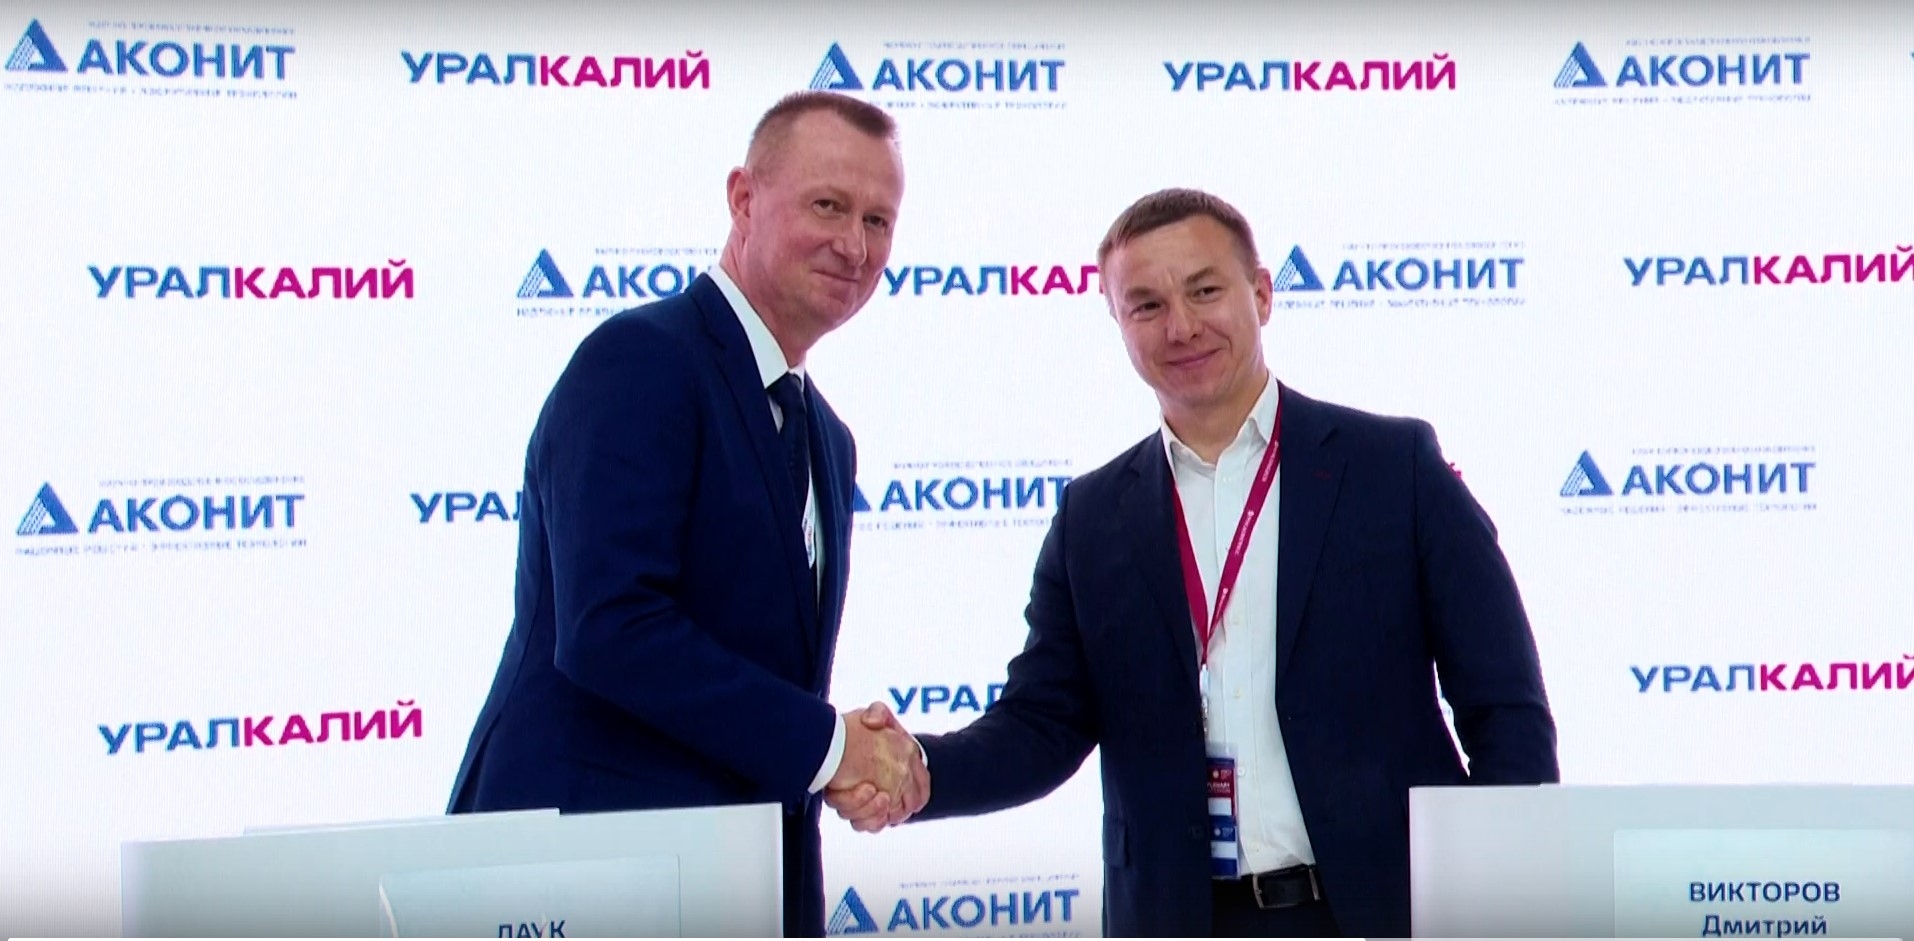 НПО «Аконит» и ПАО «Уралкалий» договорились вместе развивать российское машиностроение